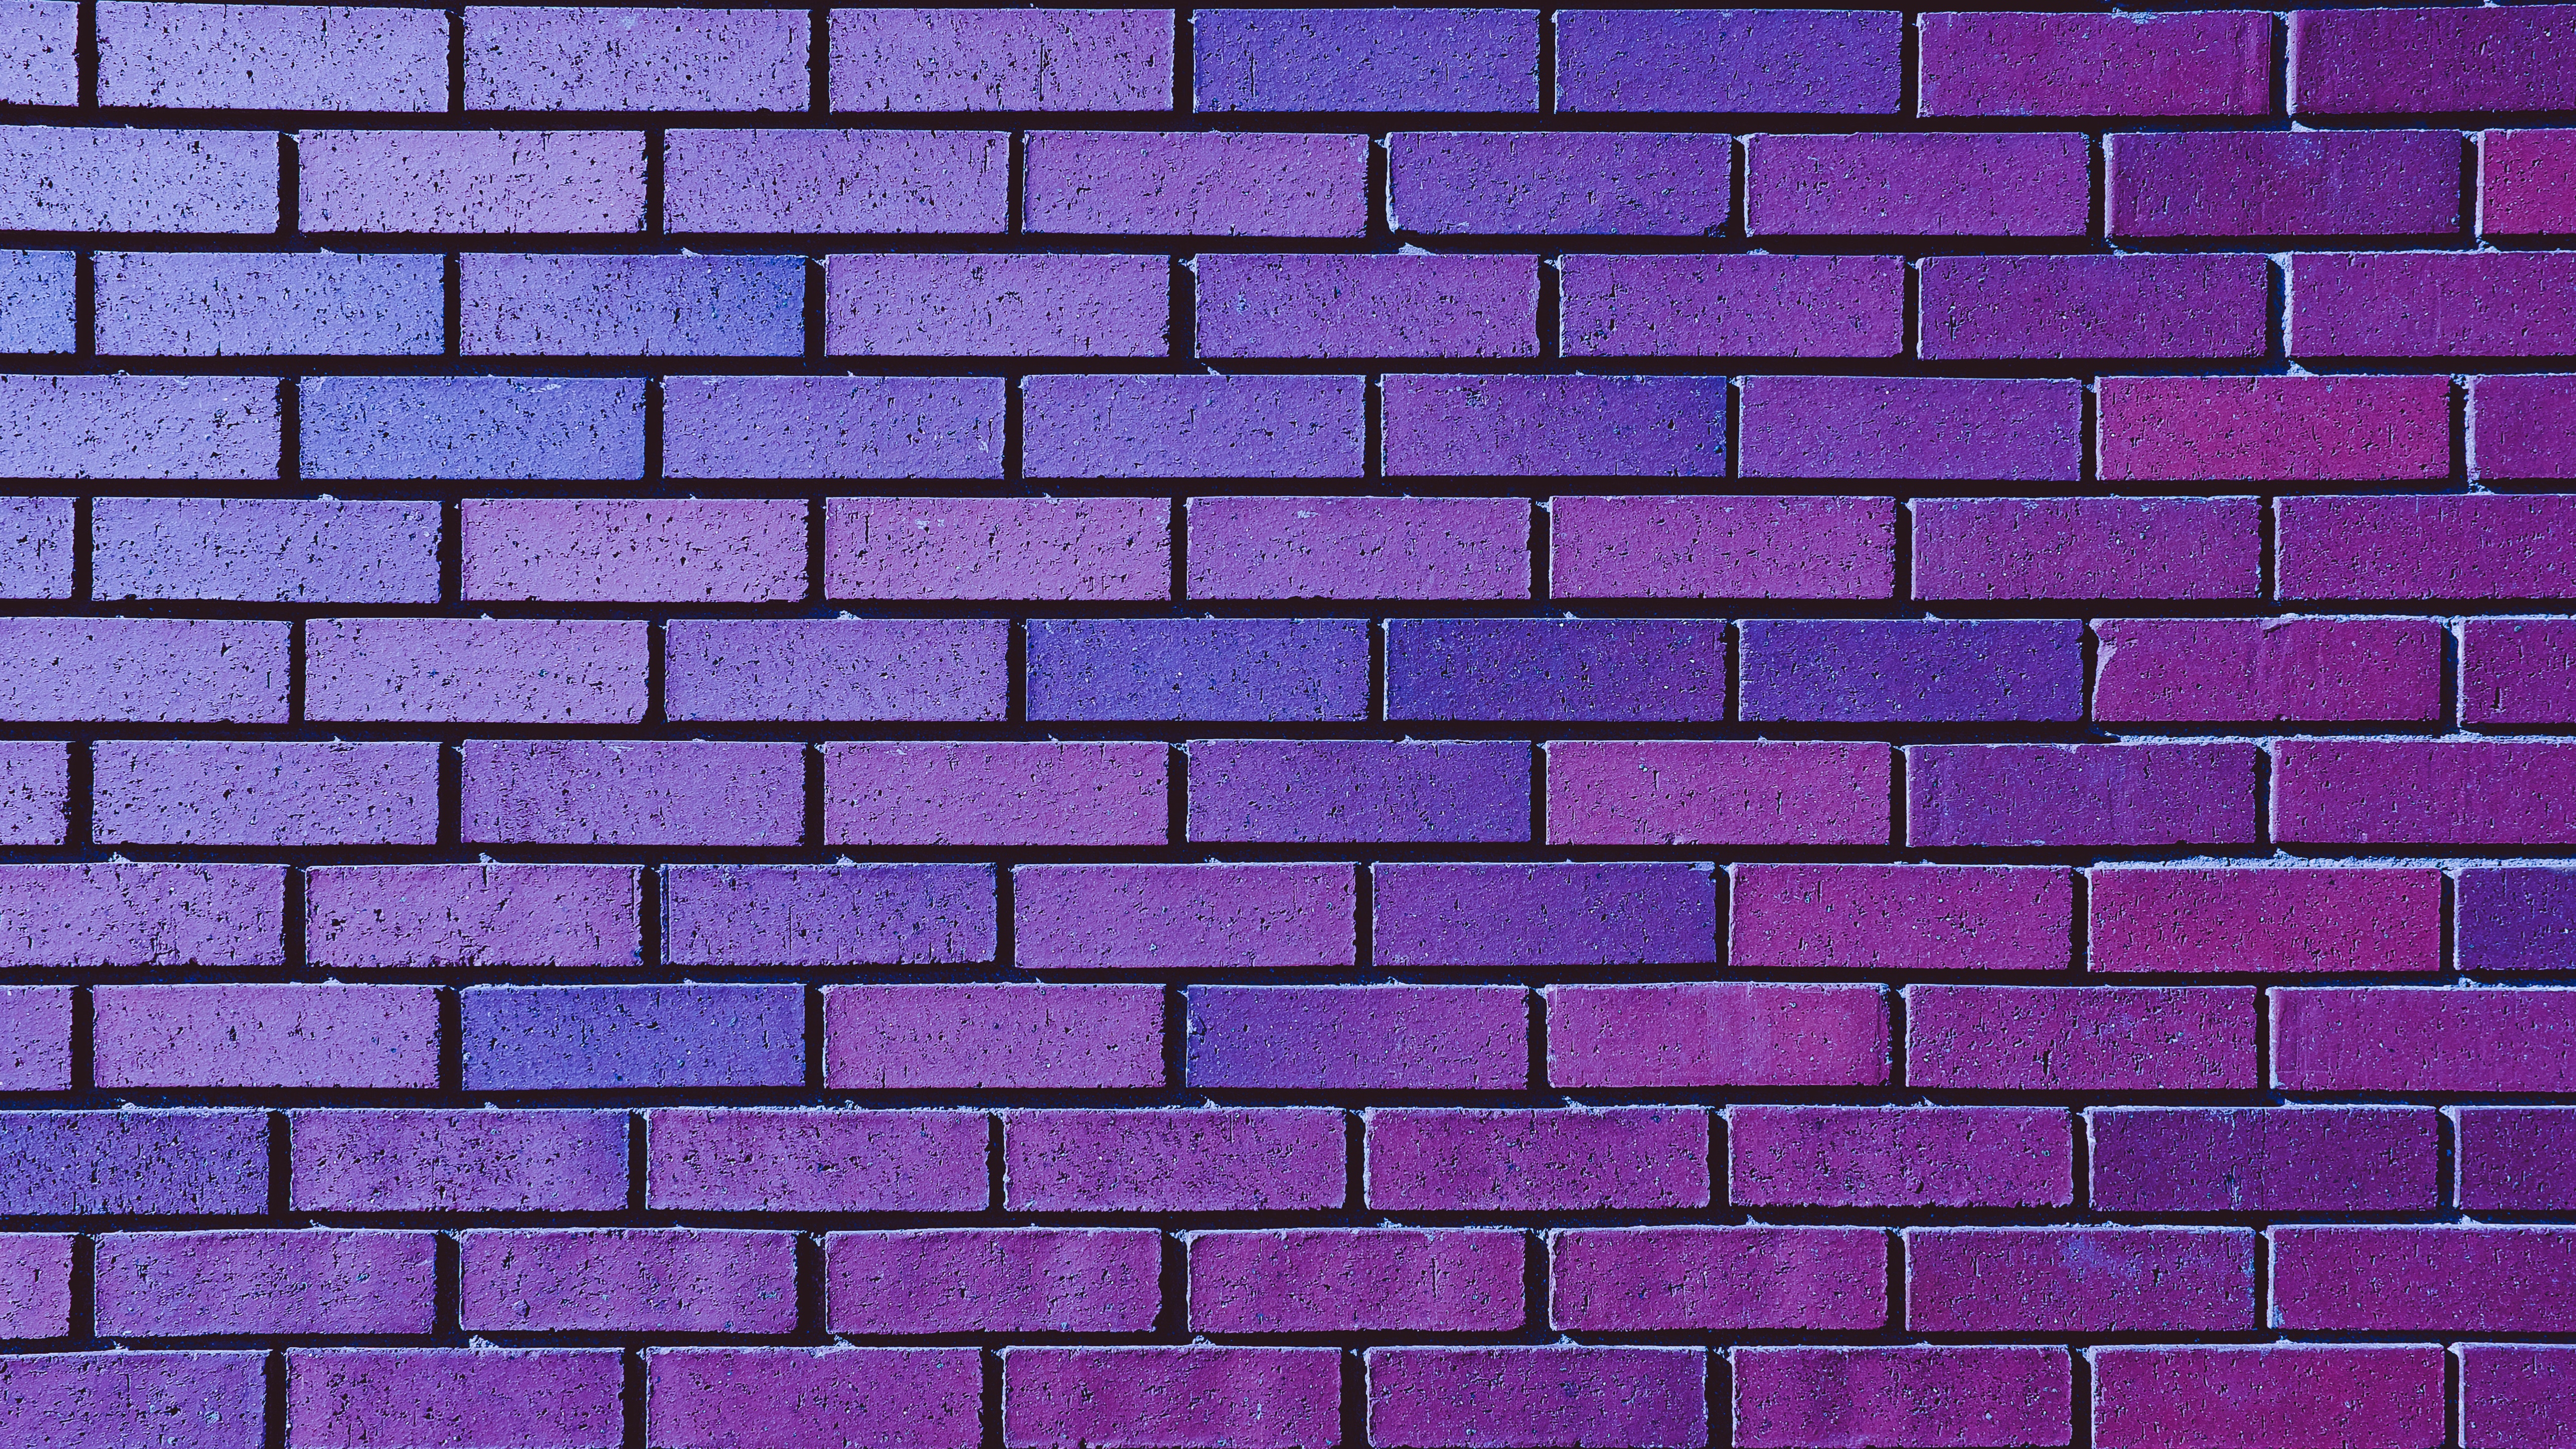 紫色砖墙